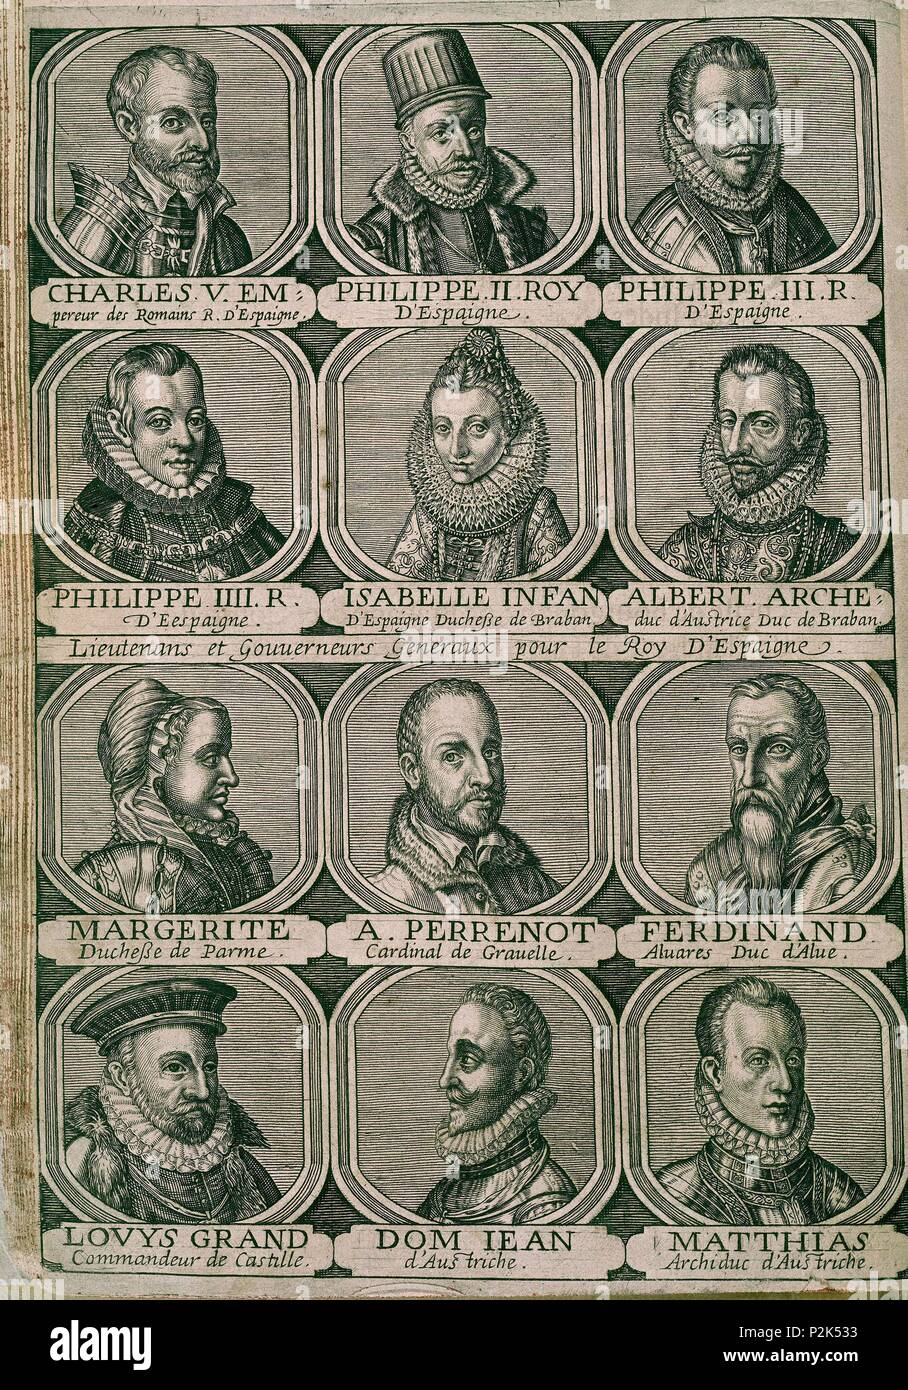 2/33271 GOBERNADORES DE LOS PAISES BAJOS - S XVI/XVII. Location: BIBLIOTECA NACIONAL-COLECCION, MADRID, SPAIN. Stock Photo